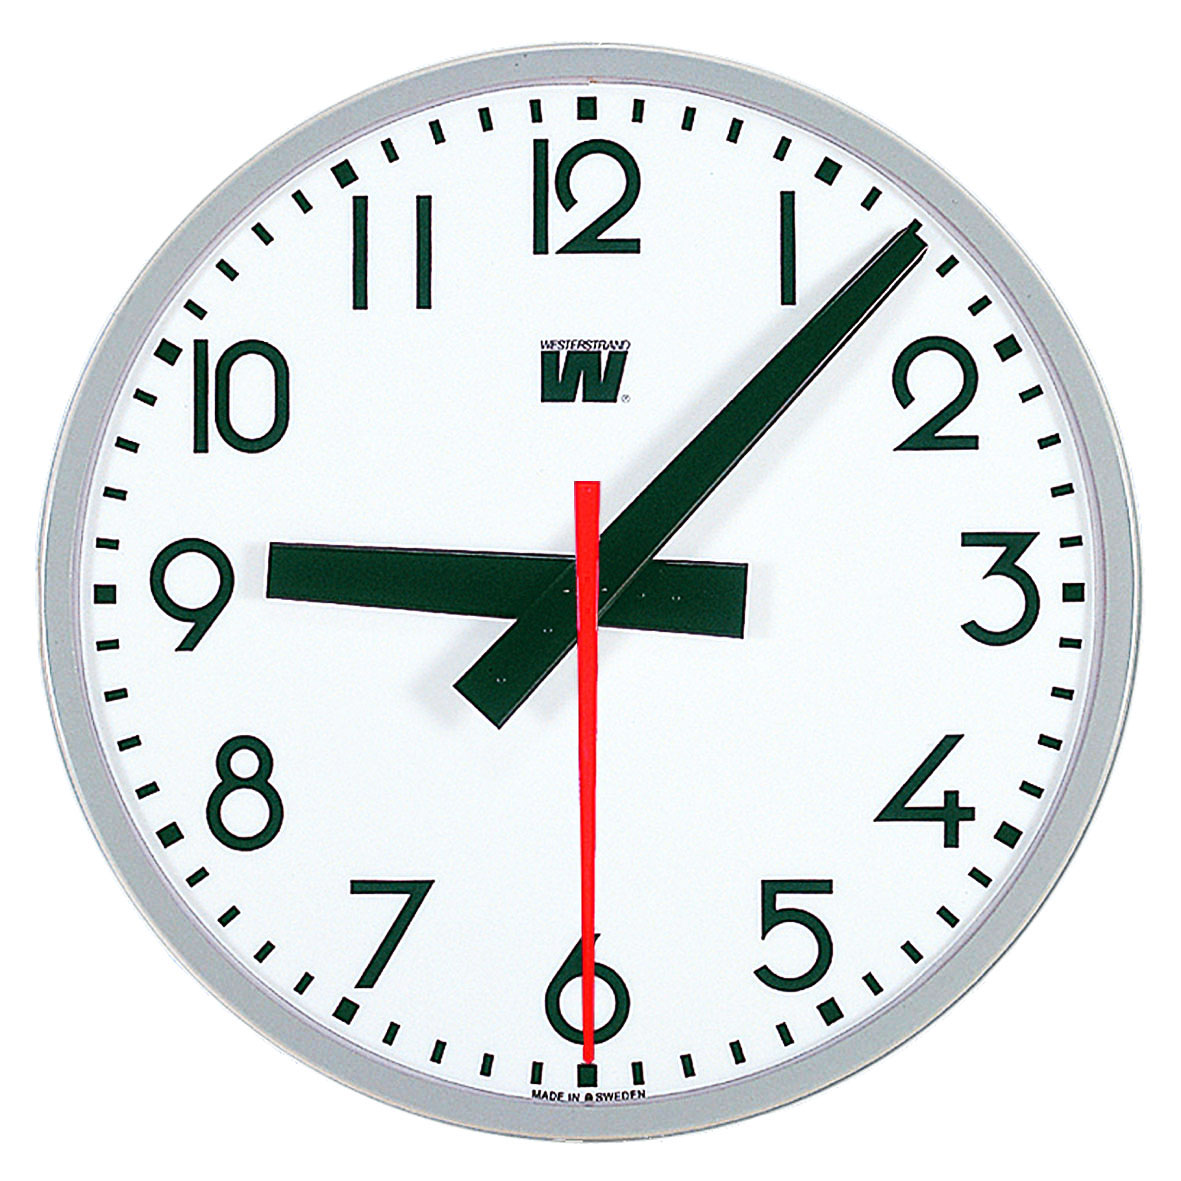 Мировые часы с секундами. Секунды в часы. 2 Clocks. Часы с NTP. Westerstrand часы как настроить.